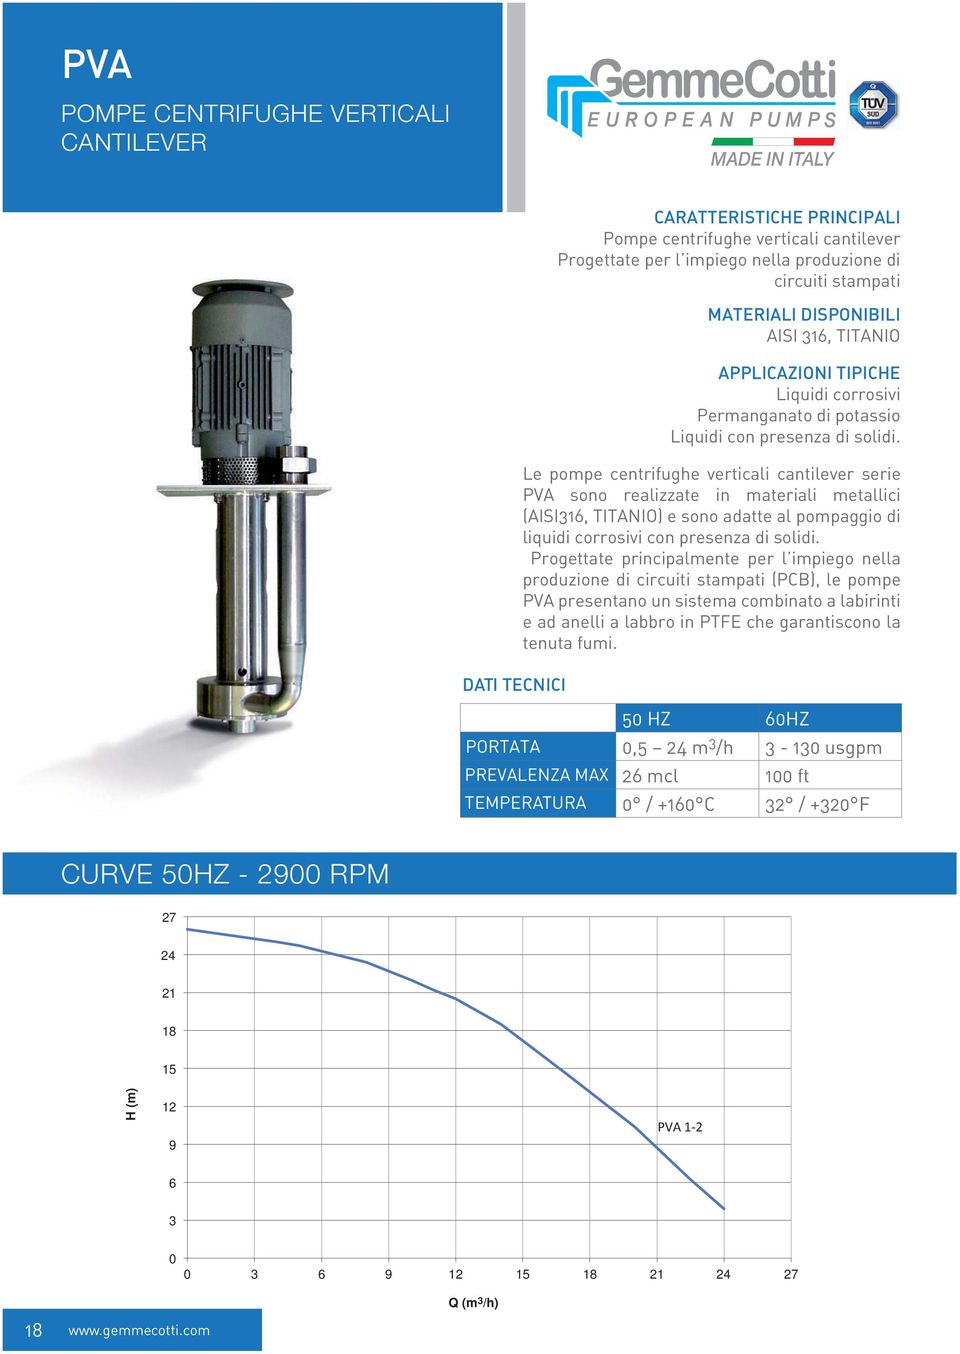 Le pompe centrifughe verticali cantilever serie PVA sono realizzate in materiali metallici (AISI316, TITANIO) e sono adatte al pompaggio di liquidi corrosivi con presenza di solidi.